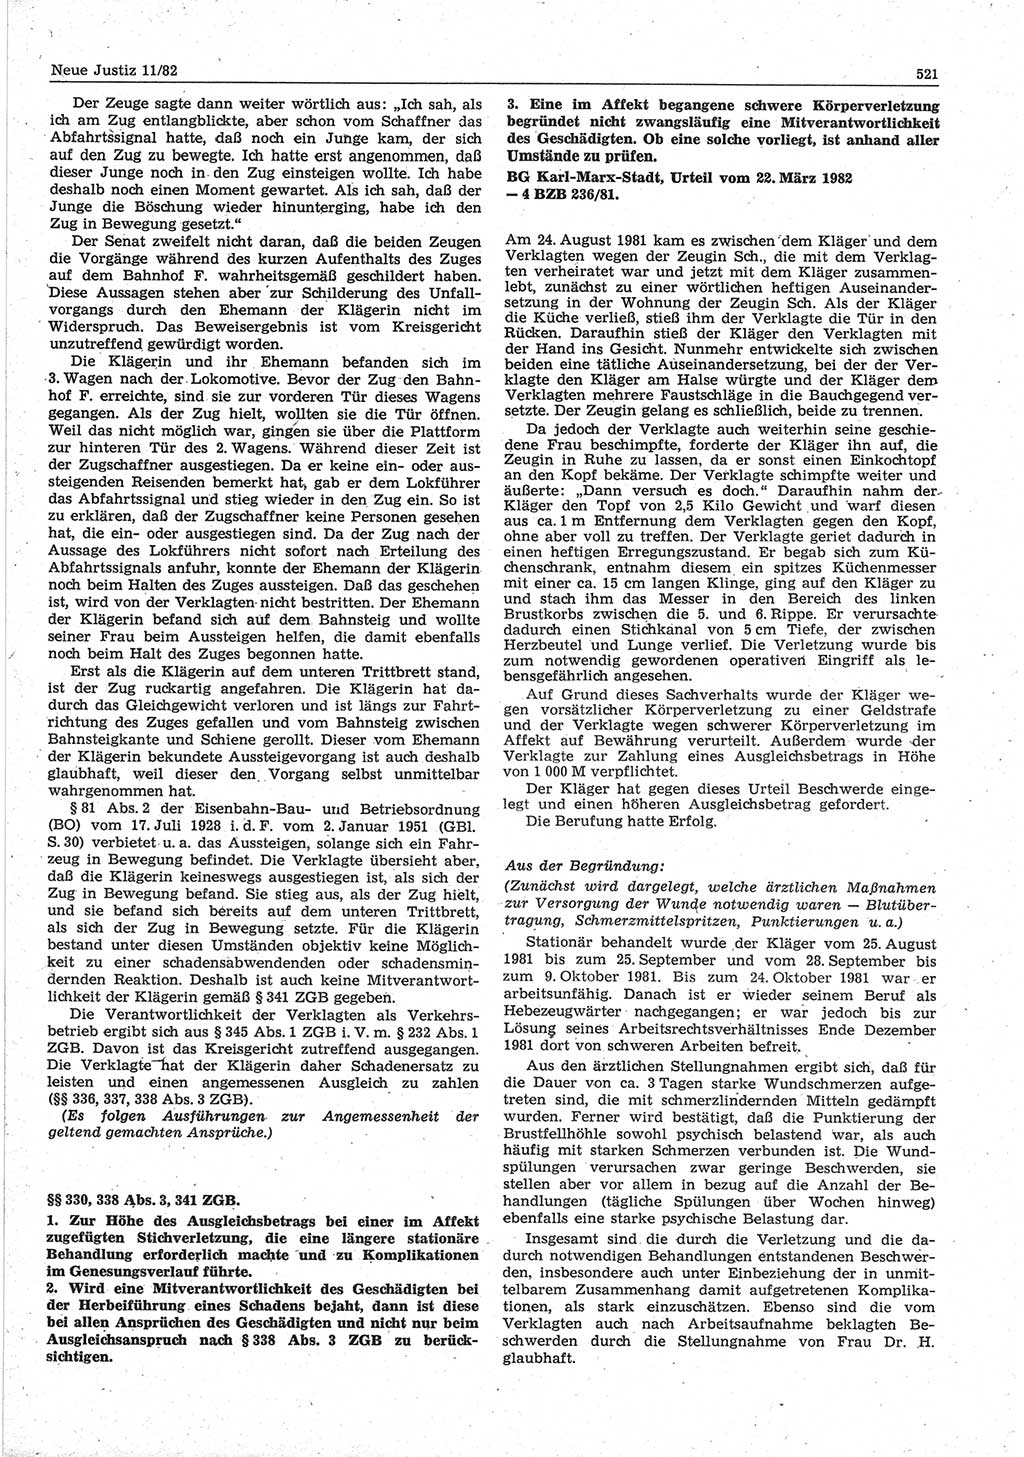 Neue Justiz (NJ), Zeitschrift für sozialistisches Recht und Gesetzlichkeit [Deutsche Demokratische Republik (DDR)], 36. Jahrgang 1982, Seite 521 (NJ DDR 1982, S. 521)